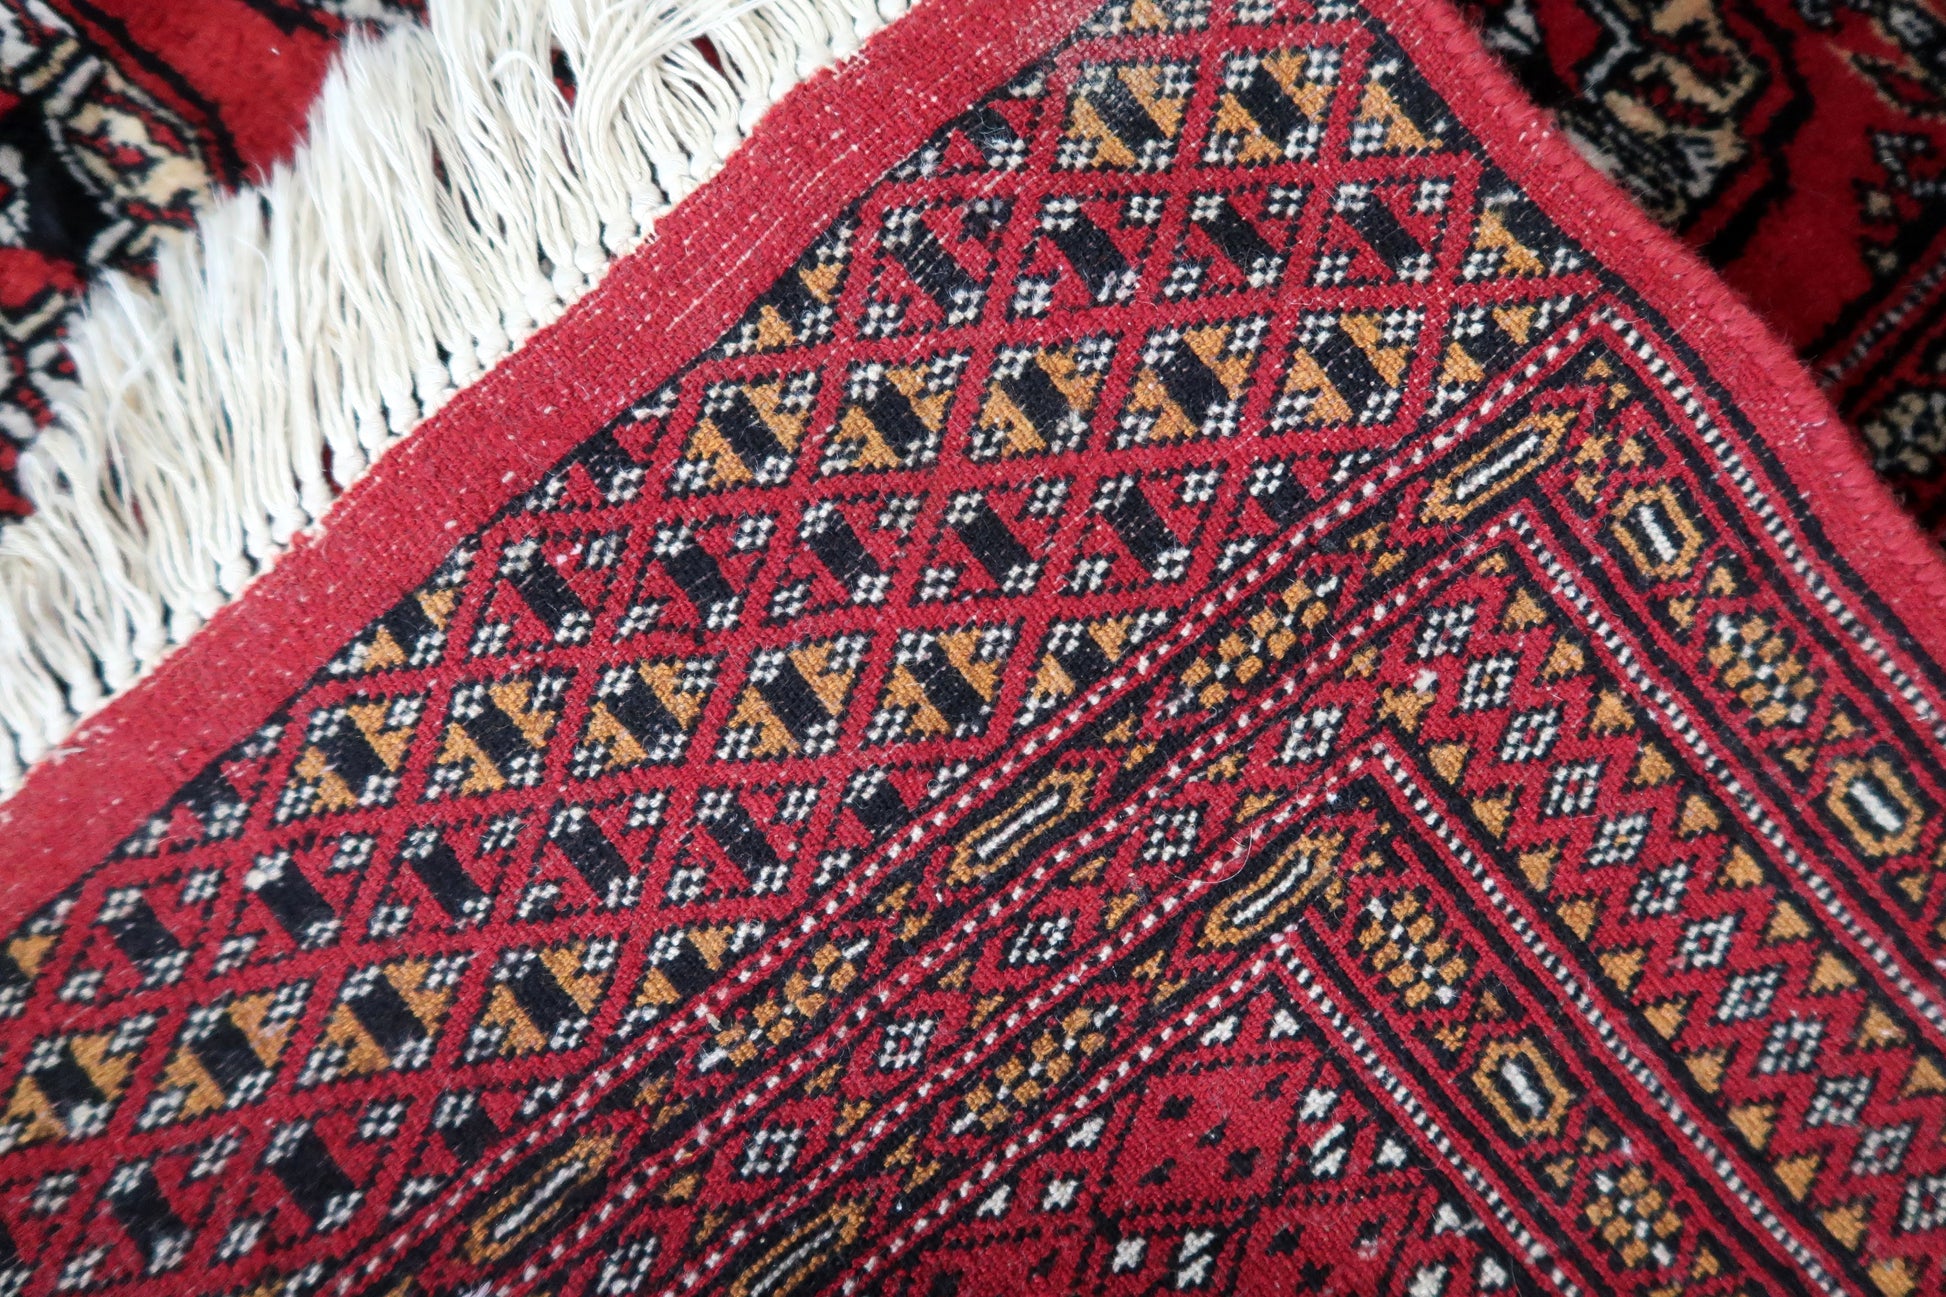 Reverse View of Handmade Uzbek Wool Rug